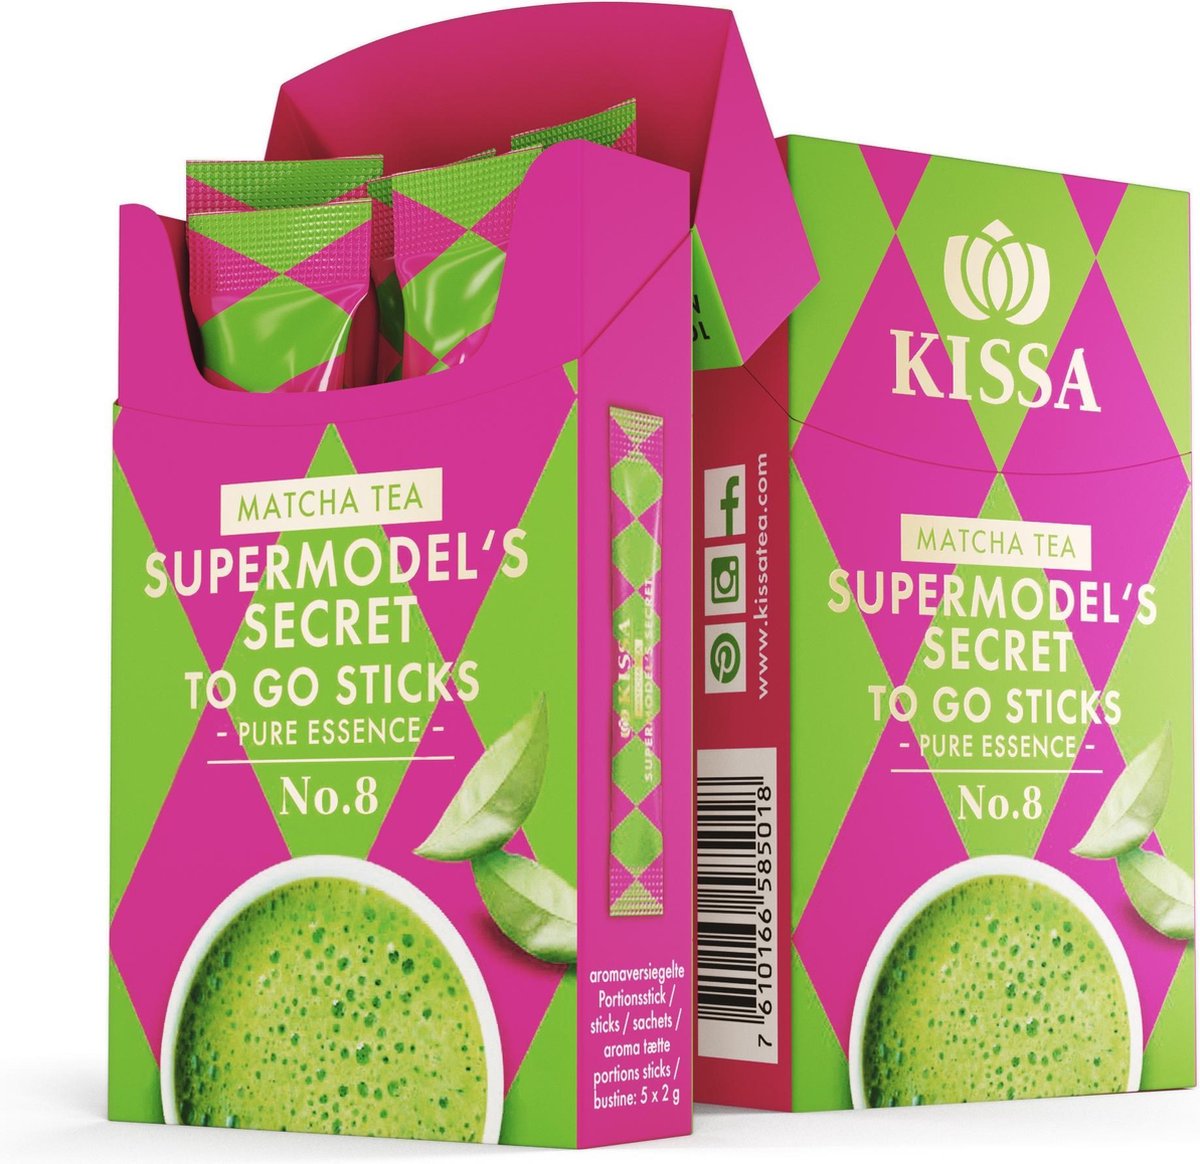 Matcha thee Supermodel's Secret to go sticks - Kissa Tea